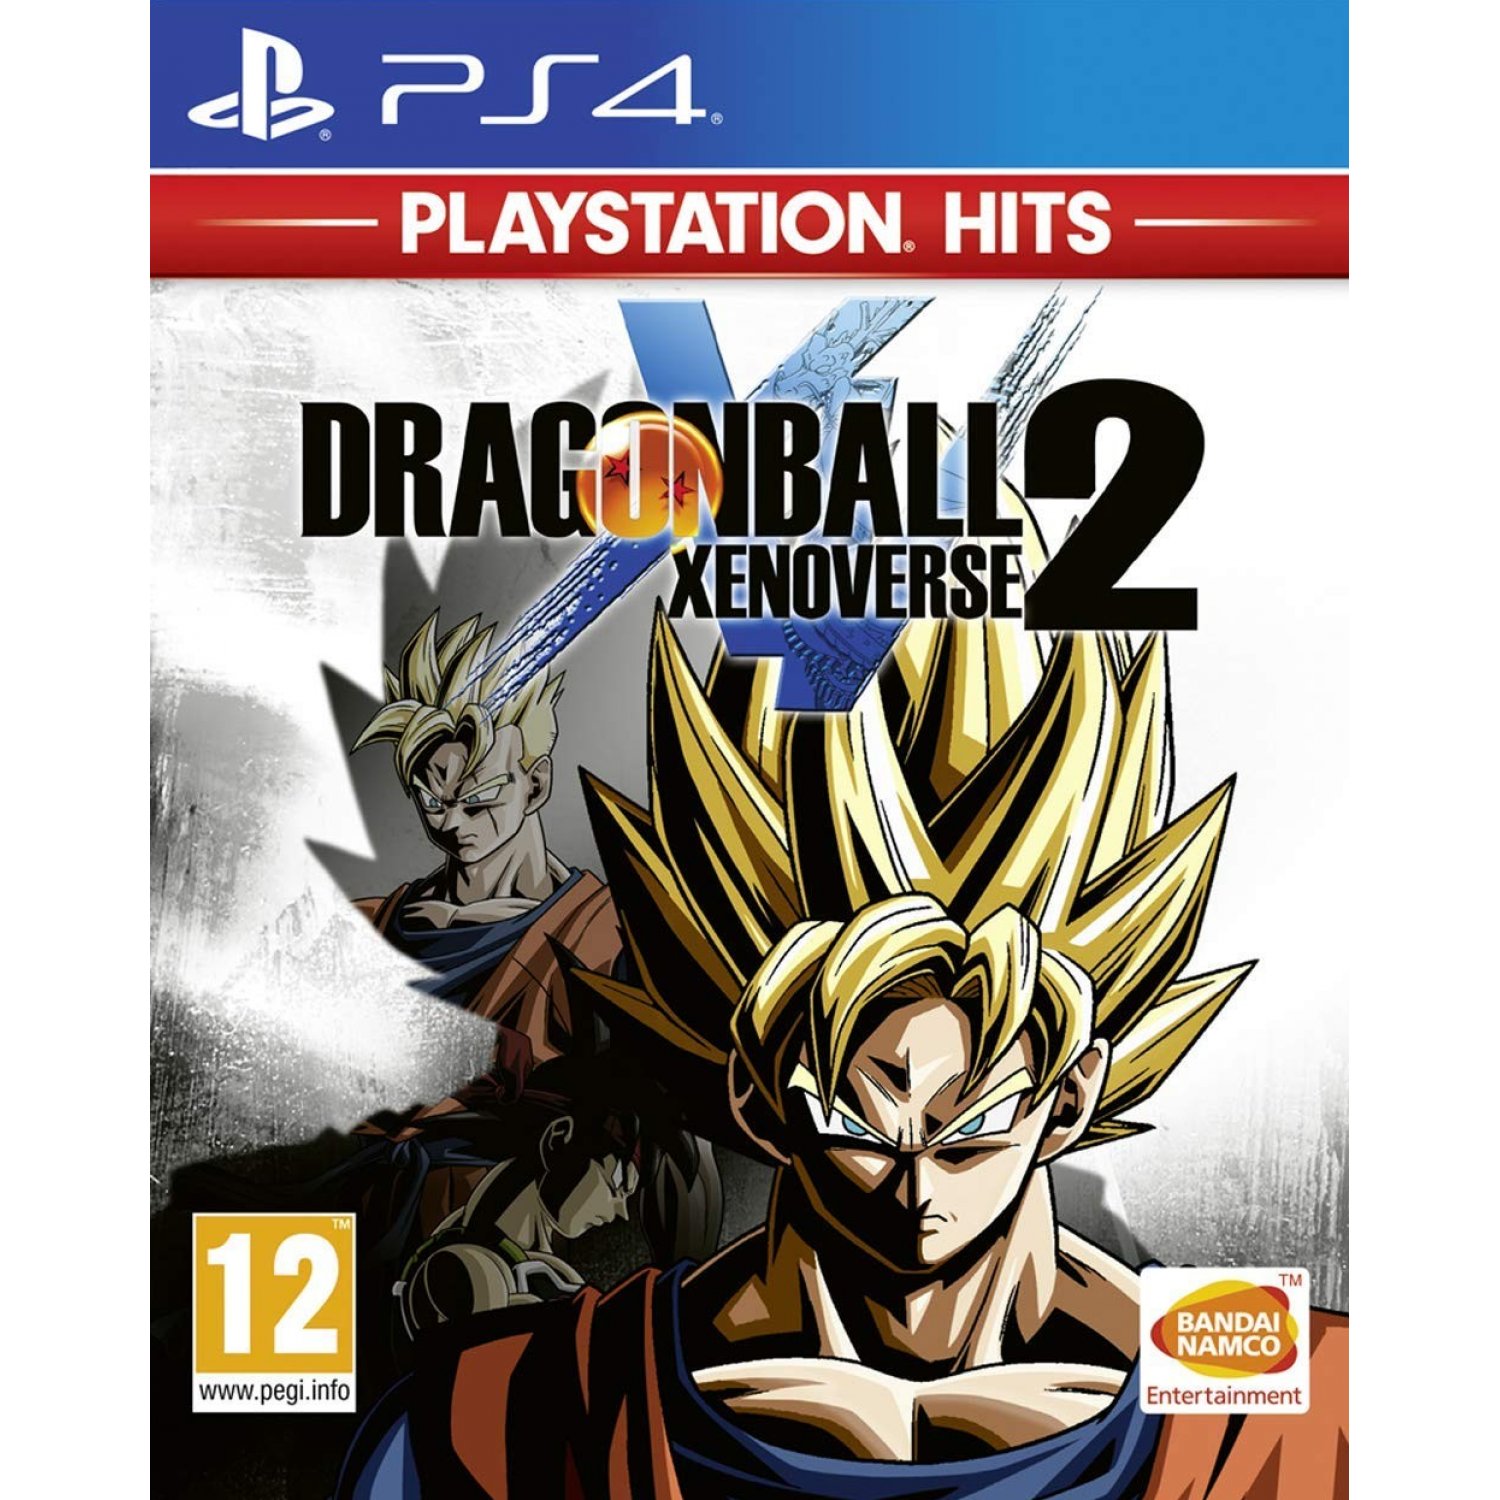 Dragon Ball: Xenoverse 2 (Playstation Hits), Namco